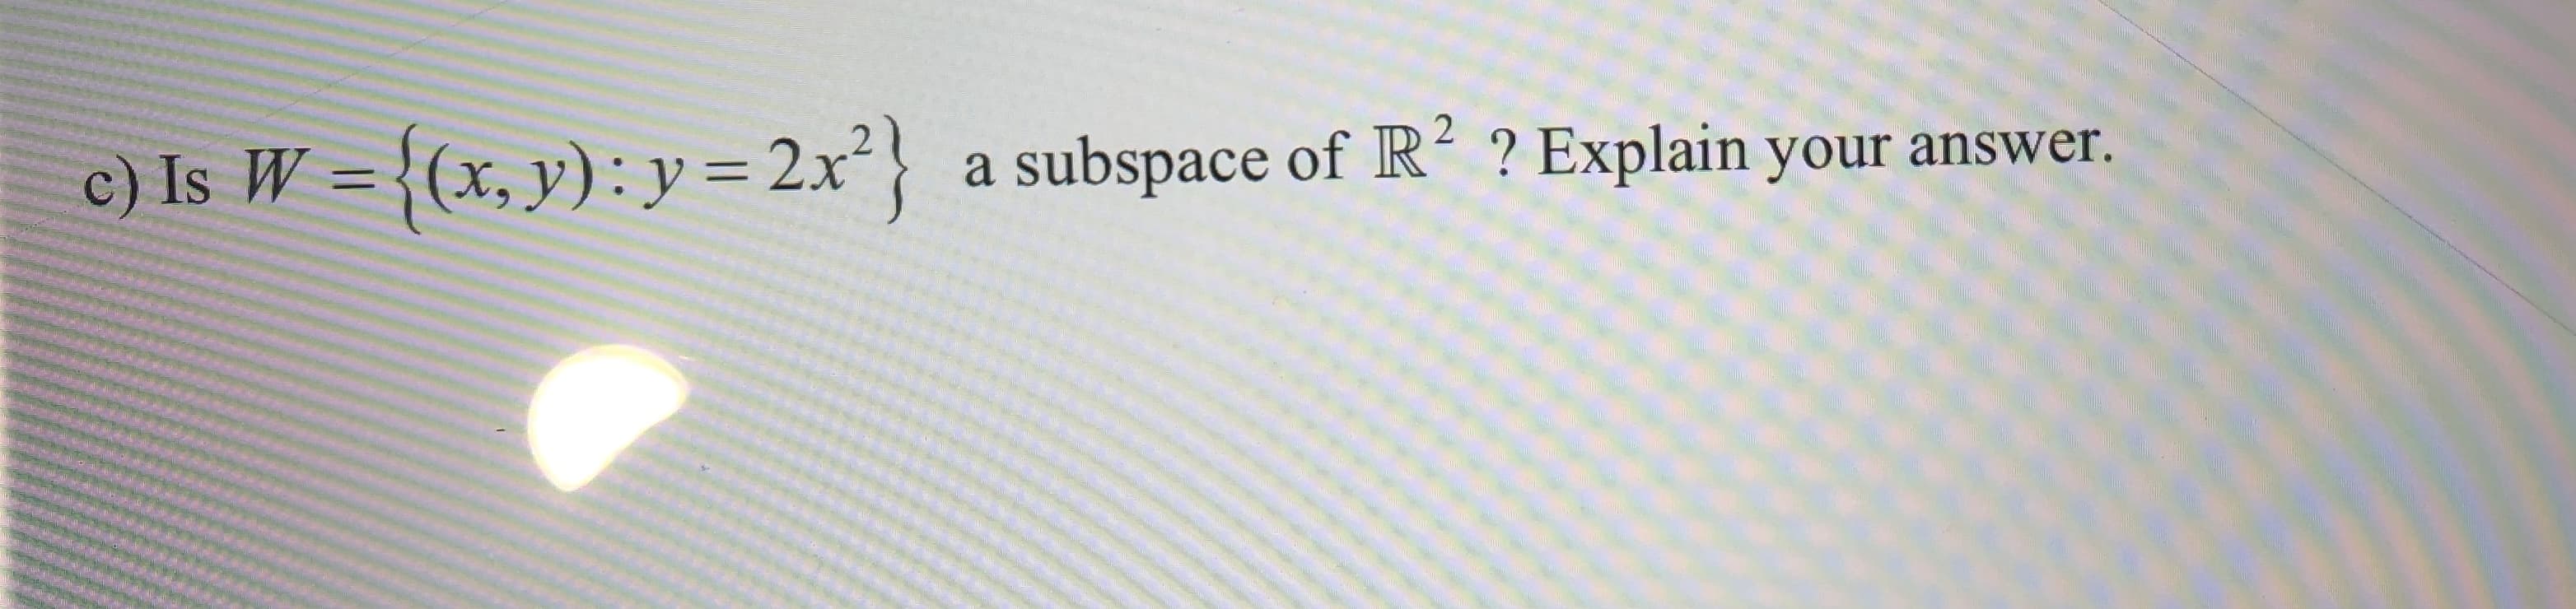 c) Is W = {(x, y): y = 2x} a subspace of R2 ? Explain your answer.
1
